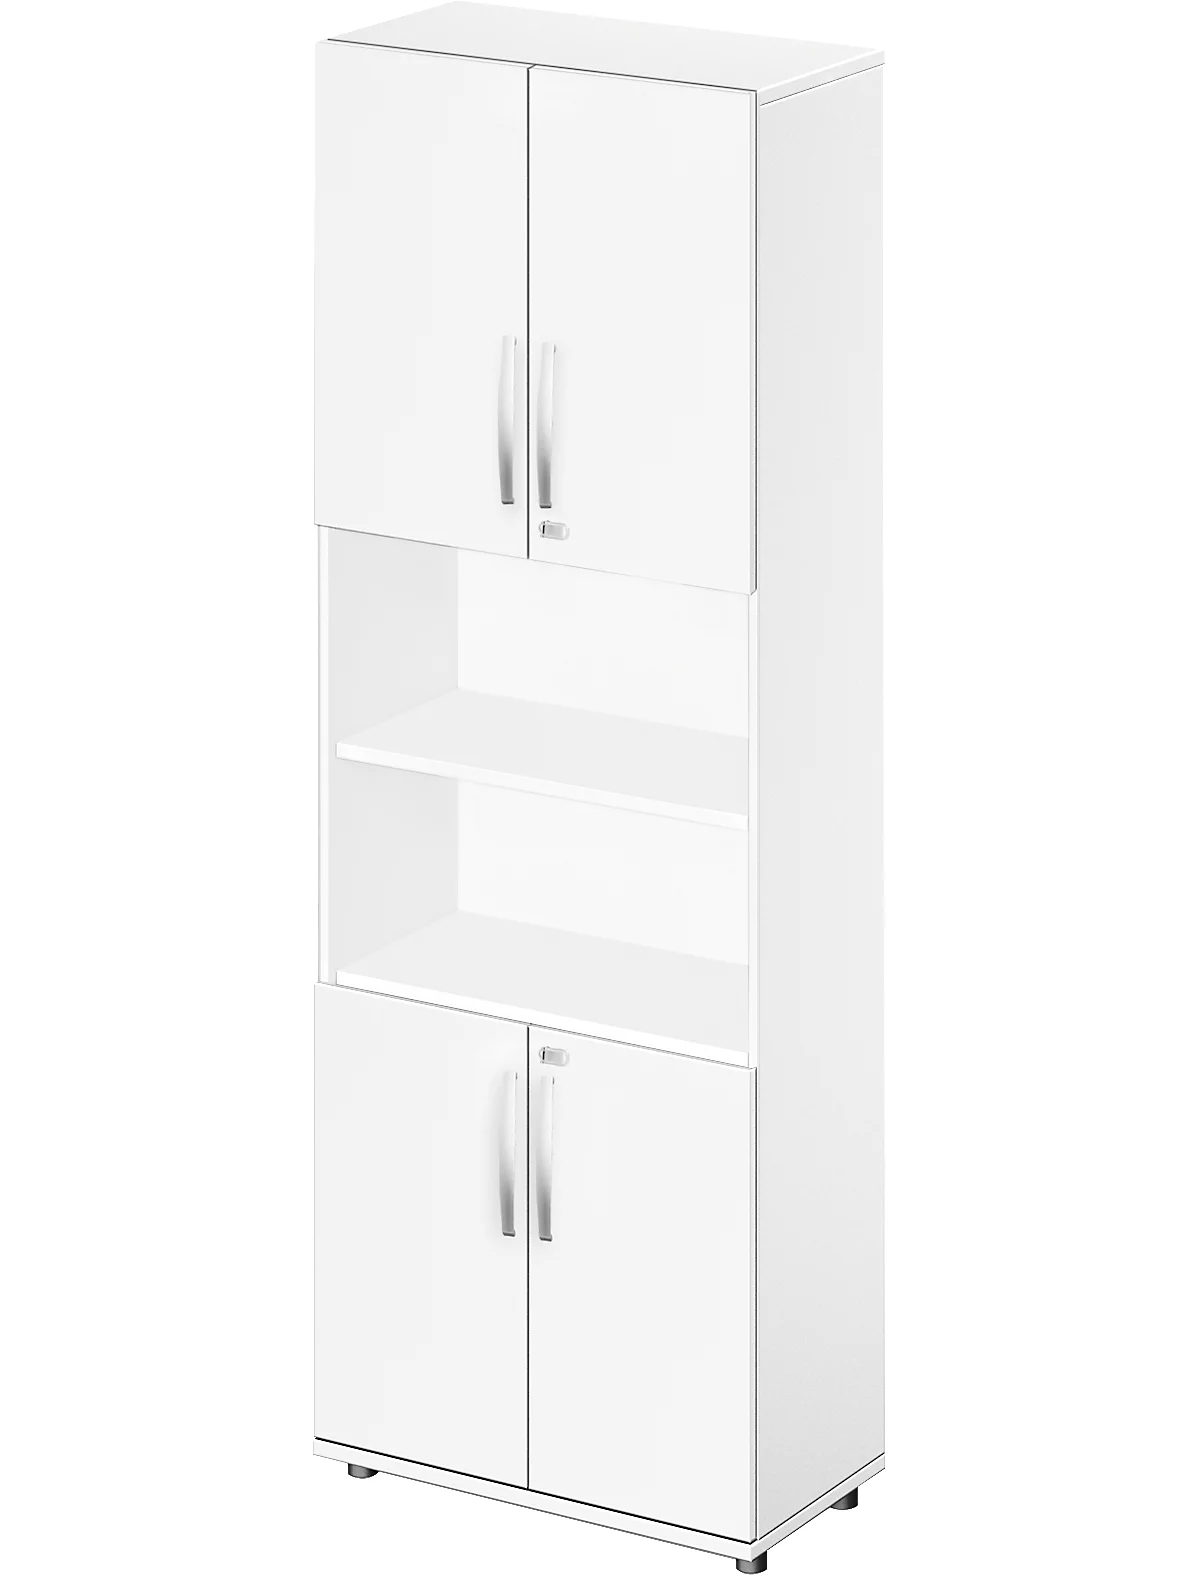 Schäfer Shop Select Kombischrank LOGIN, oben und unten 2 Ordnerhöhen mit Tür, Mitte Regal, B 800 x T 420 x H 2240 mm, weiß/weiß